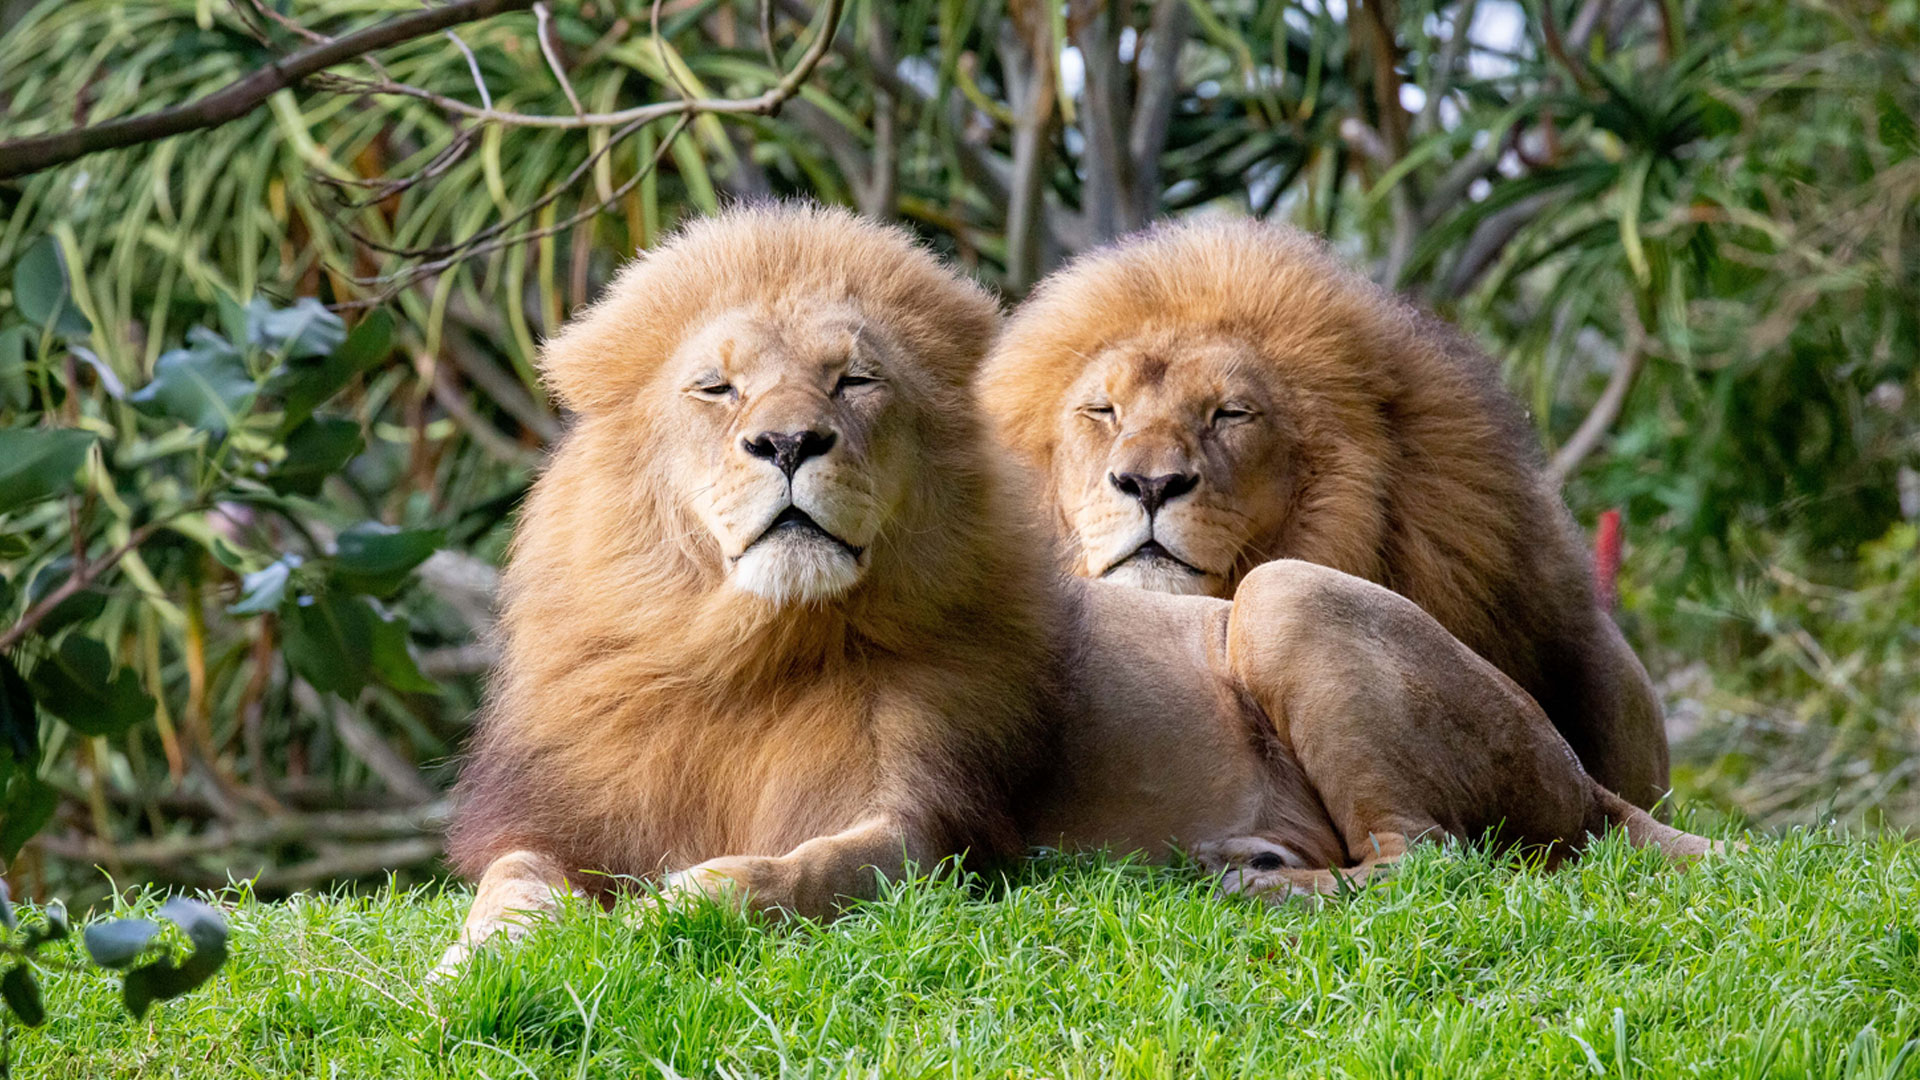 https://cdn.aucklandunlimited.com/zoo/assets/media/lions-malik-zulu-gallery-1.jpg